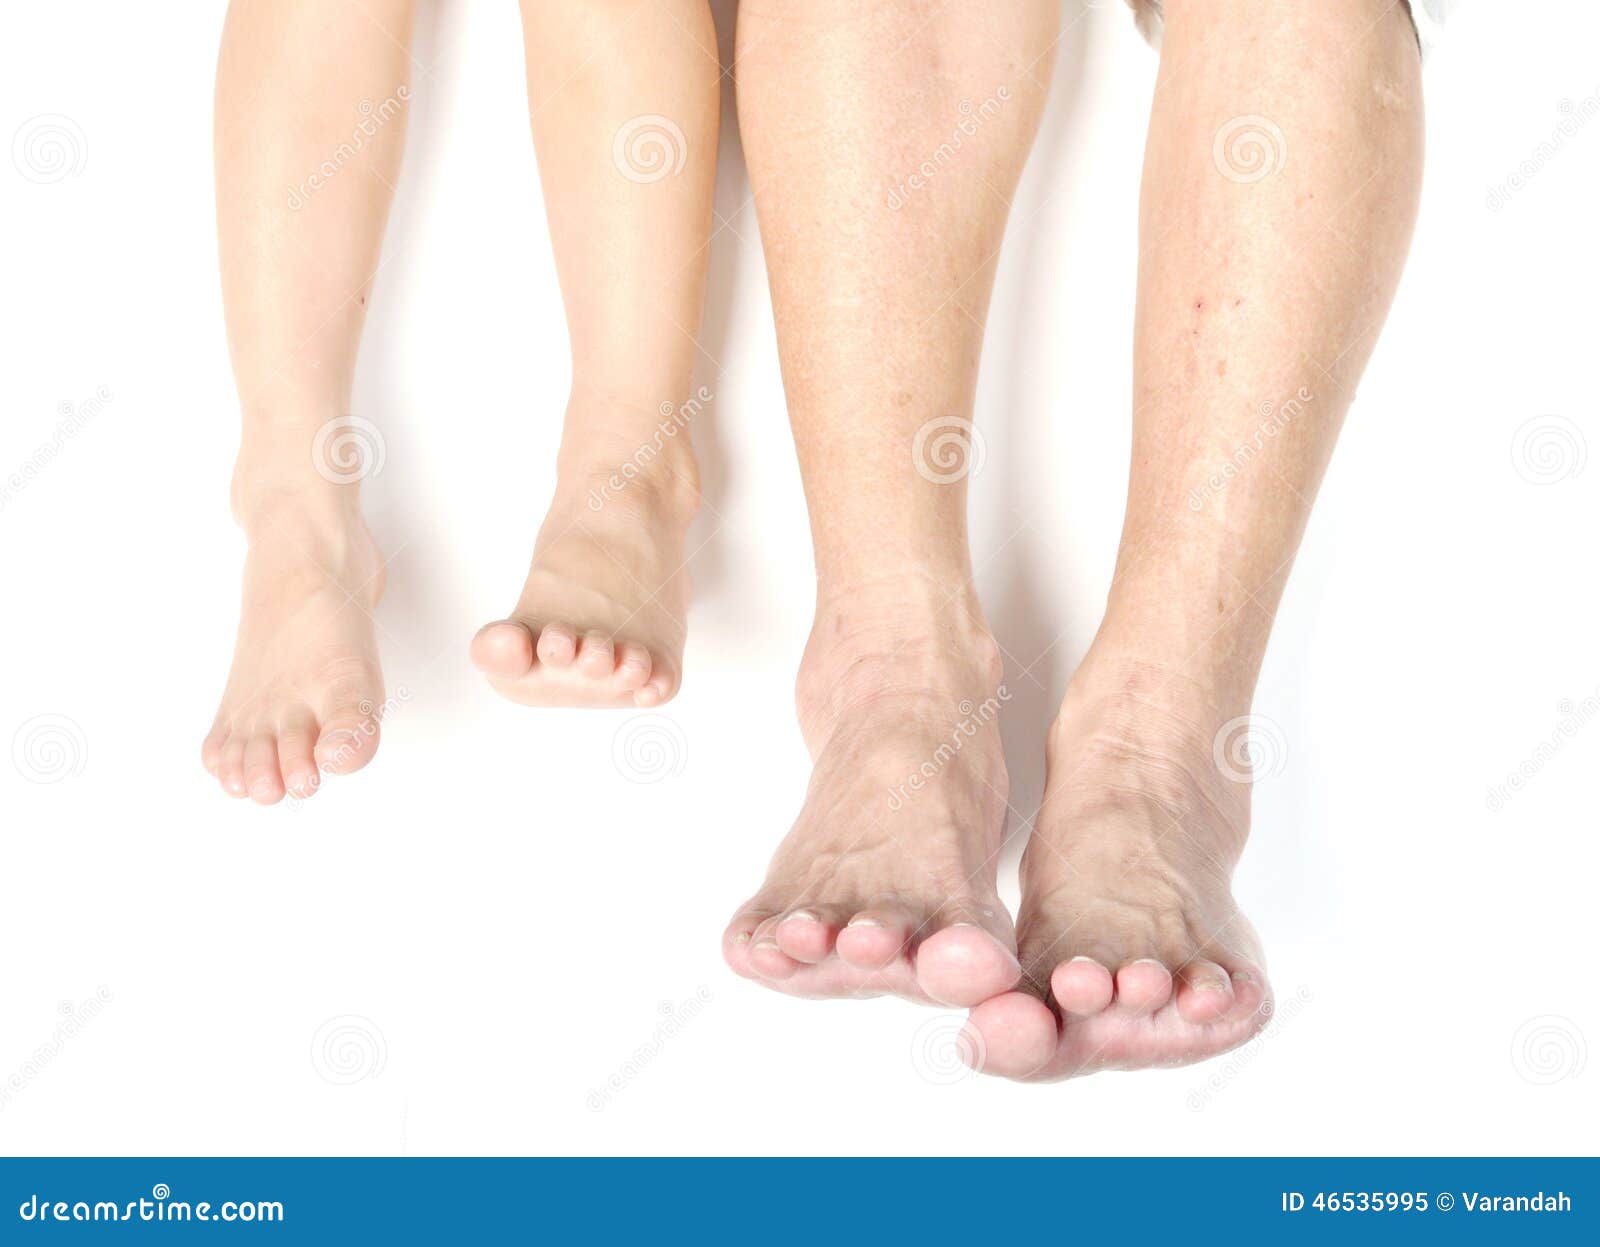 Gilf feet